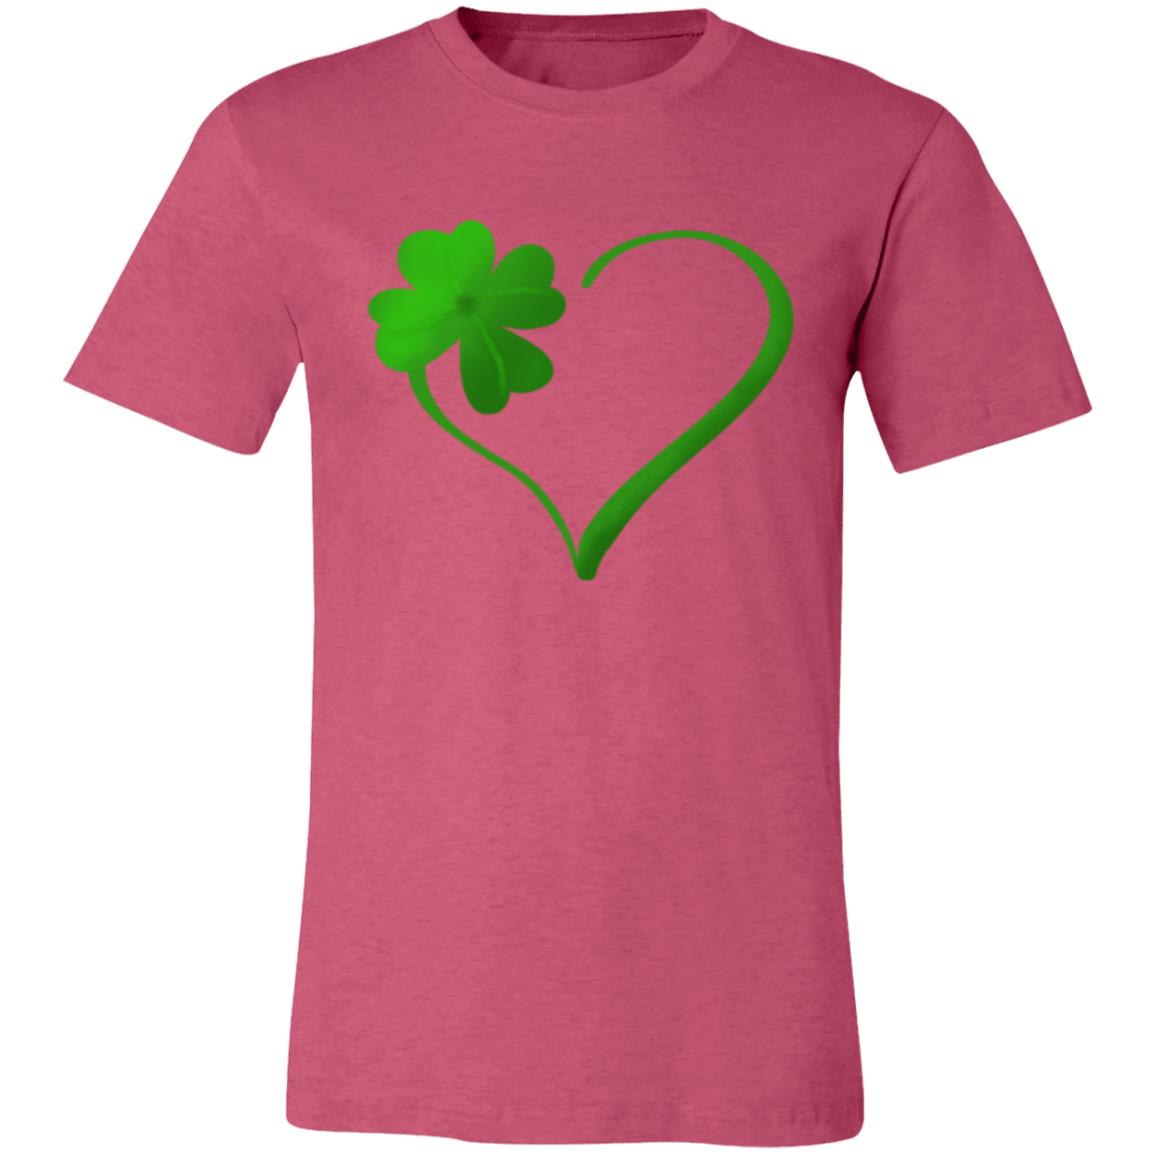 Clover Heart -- Unisex Jersey Short-Sleeve T-Shirt